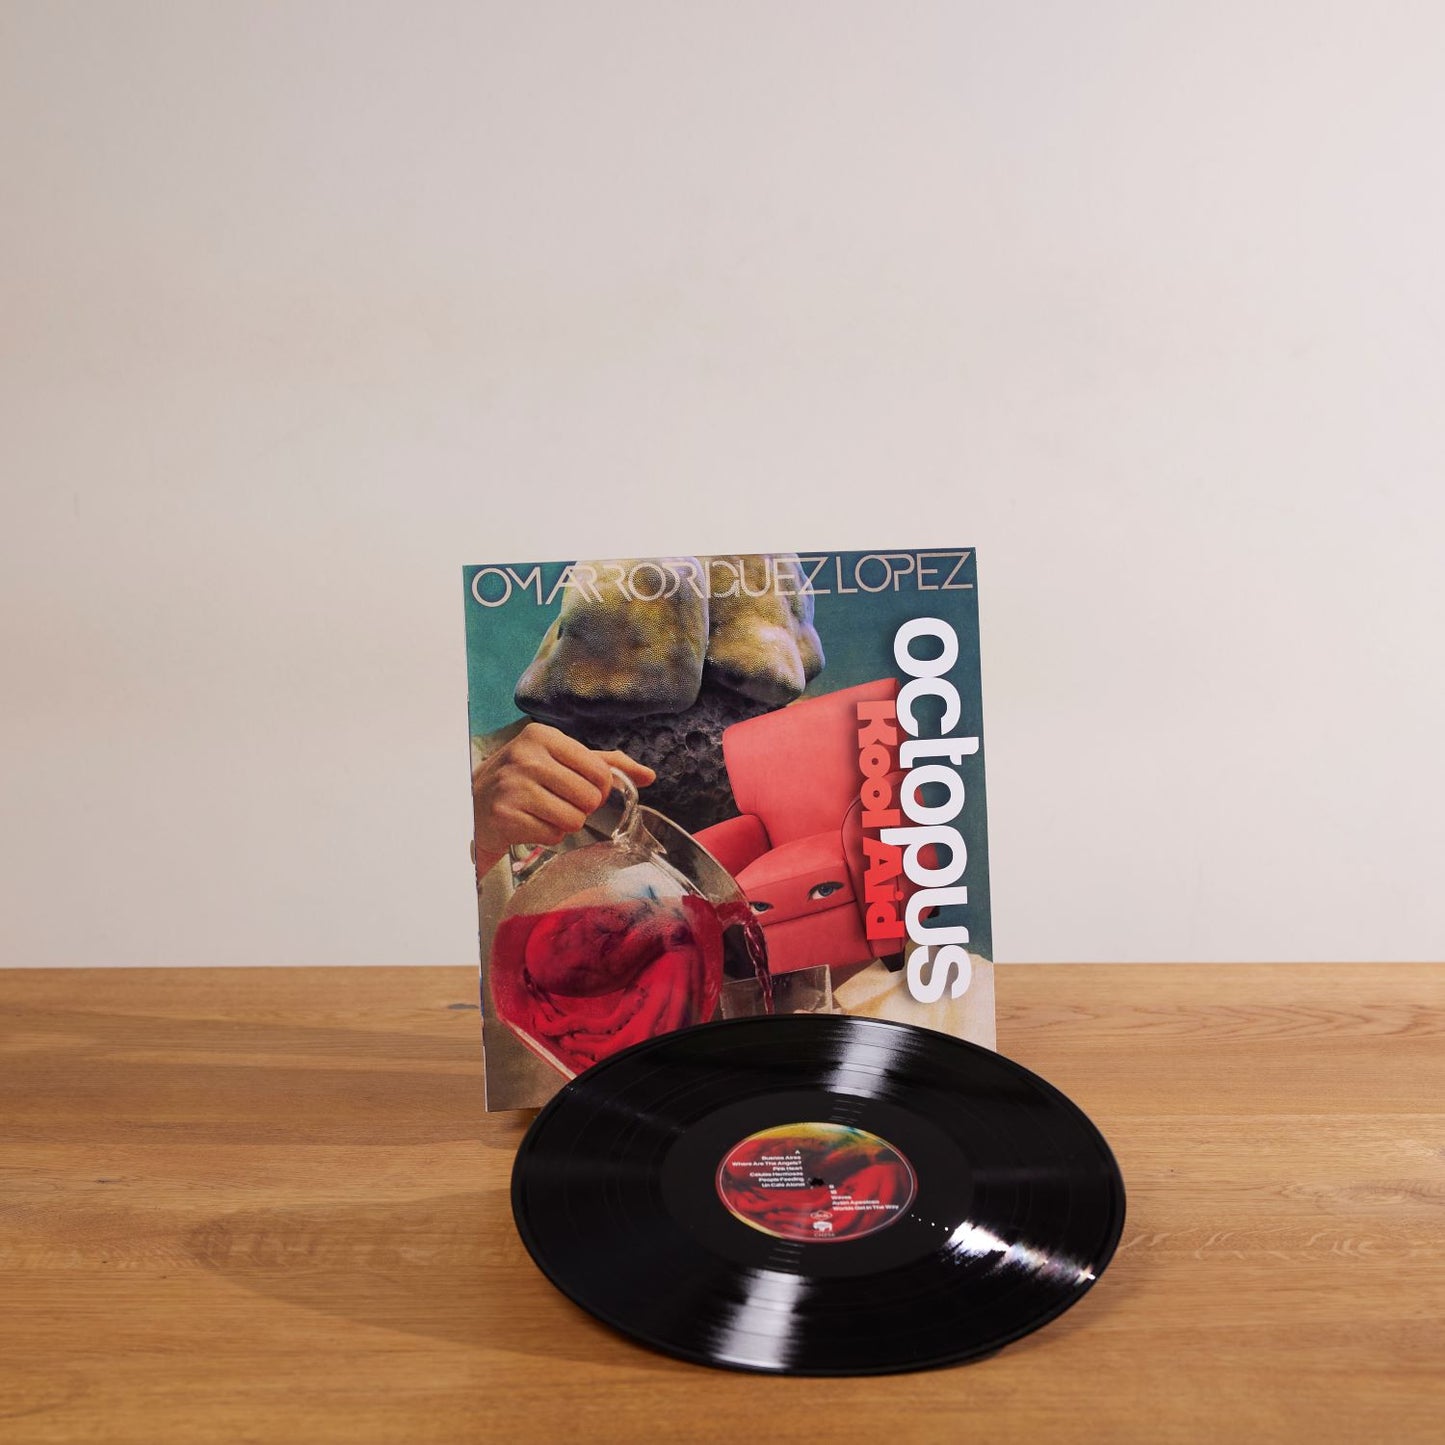 Omar Rodríguez-López - Octopus Kool Aid - LP